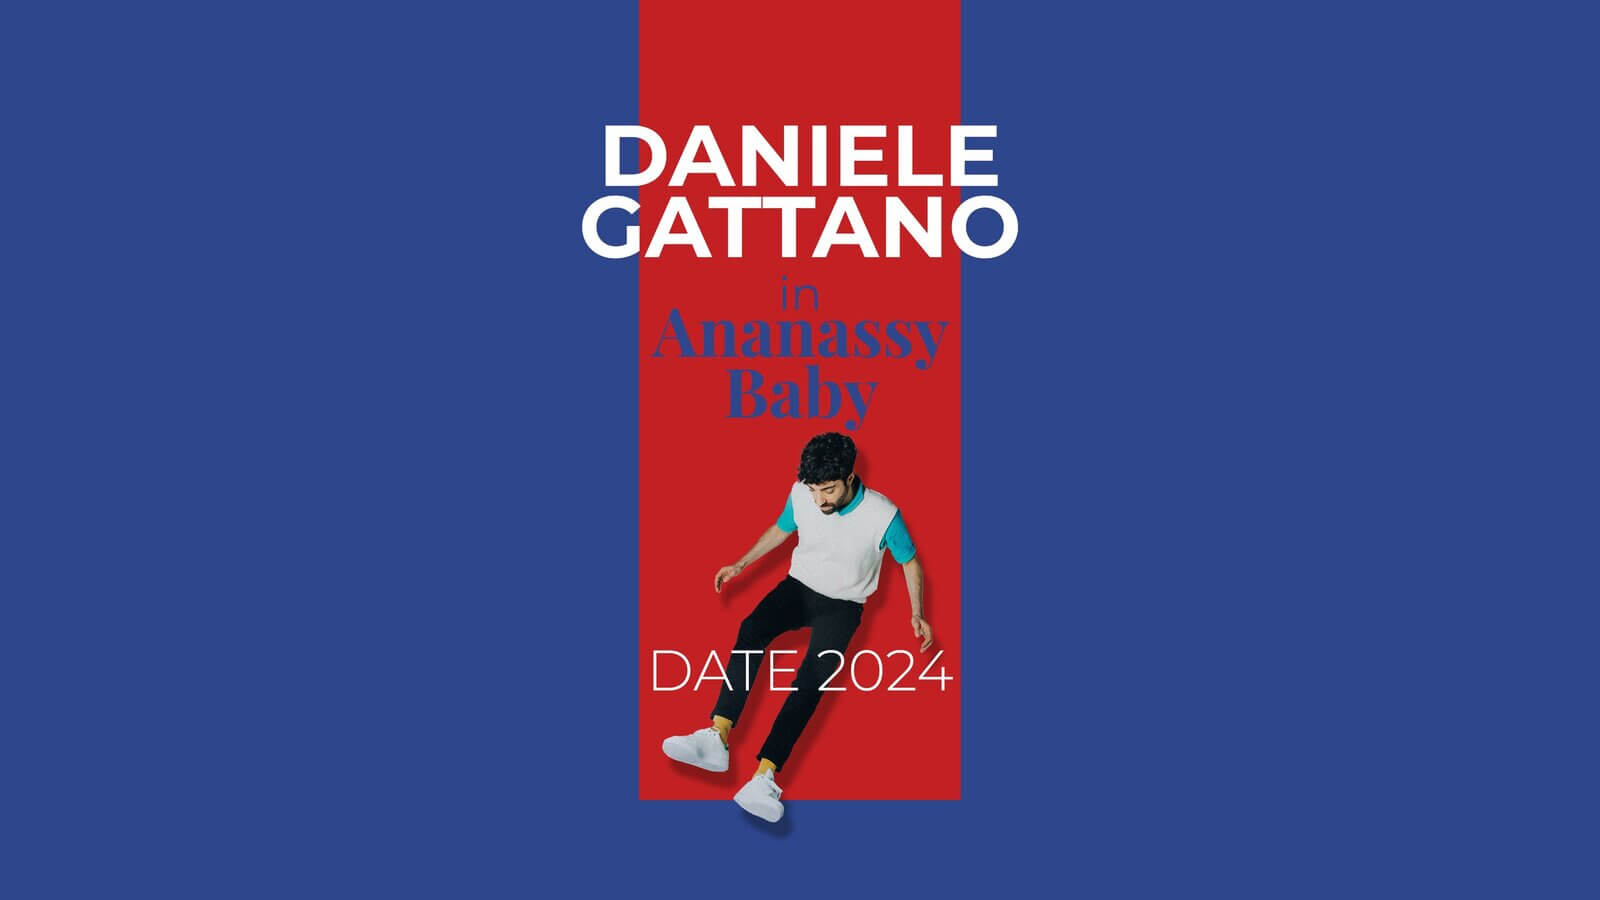 Daniele Gattano, Ananassy Baby